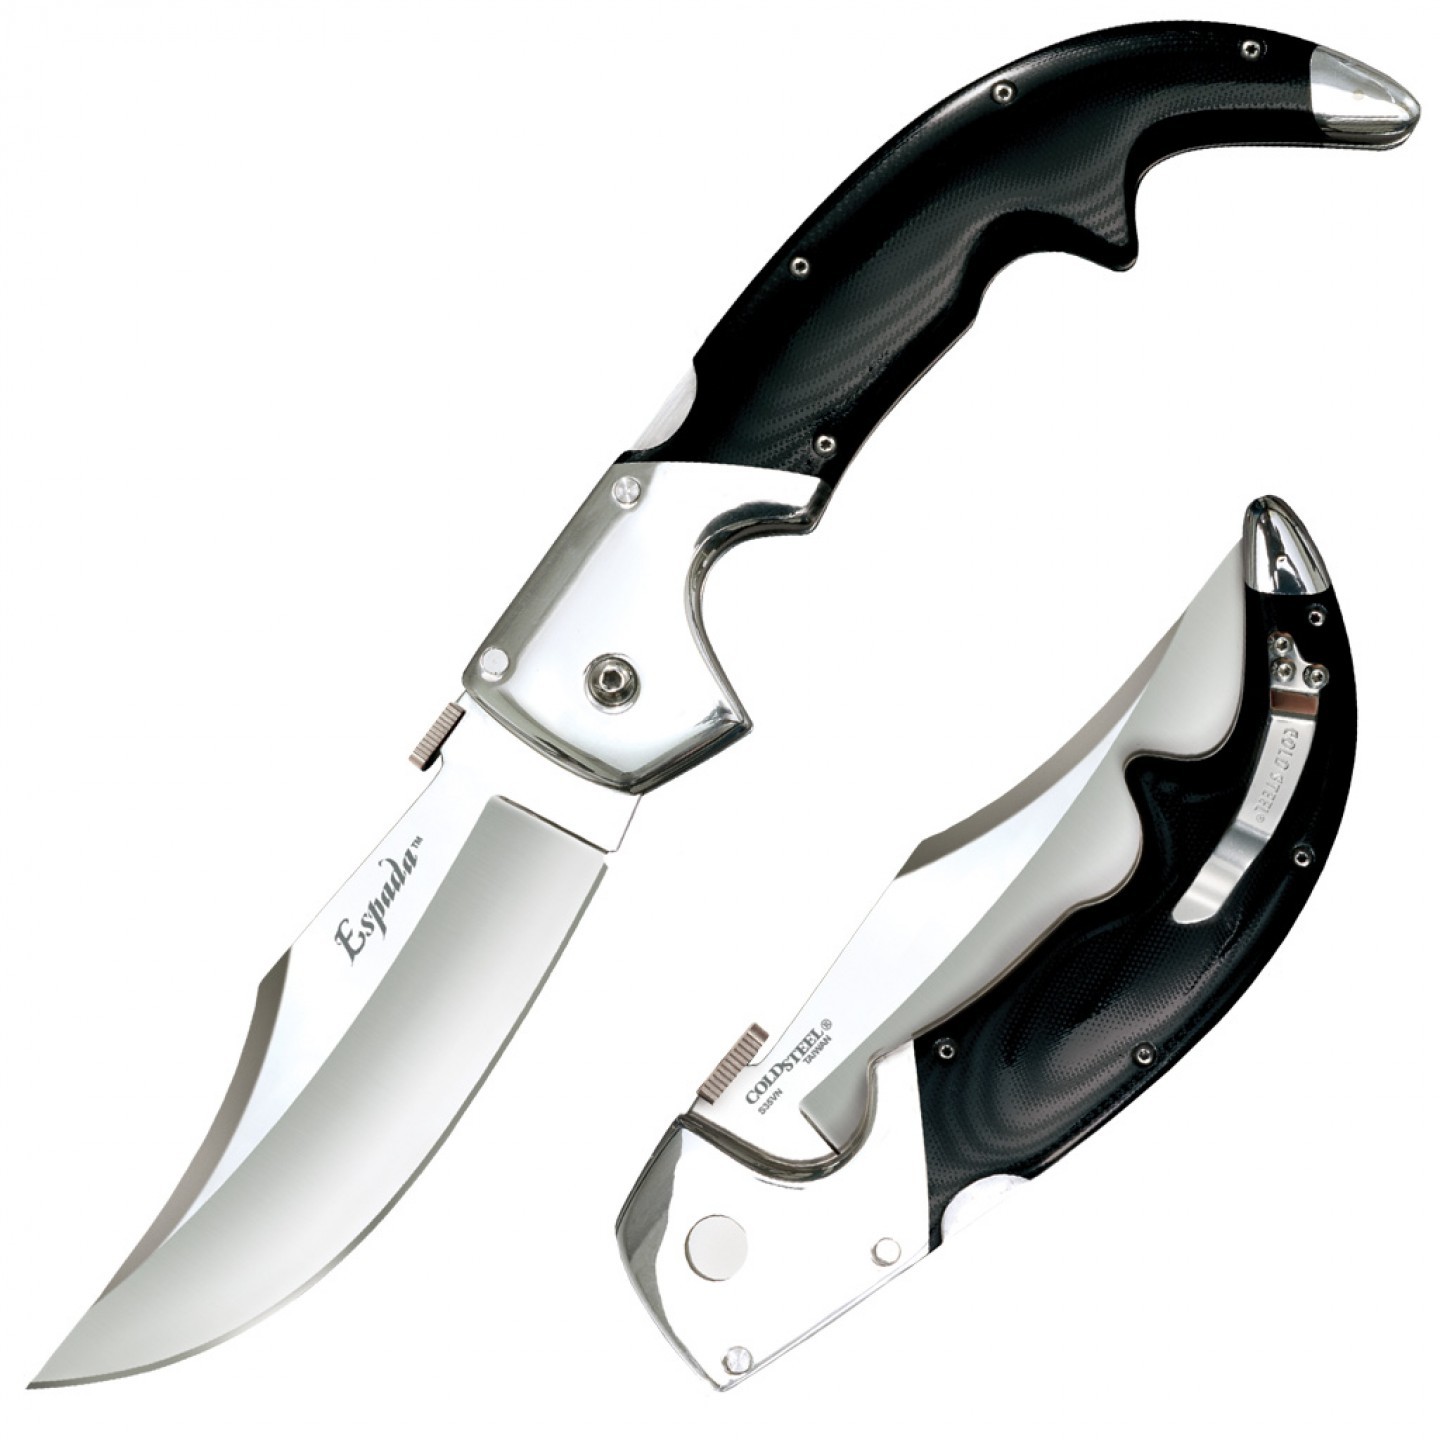 Складной нож Espada (Large) - Cold Steel 62MB, сталь CPM-S35VN, рукоять G10/Анодированный алюминий складной нож hawk cpm s35vn verawood